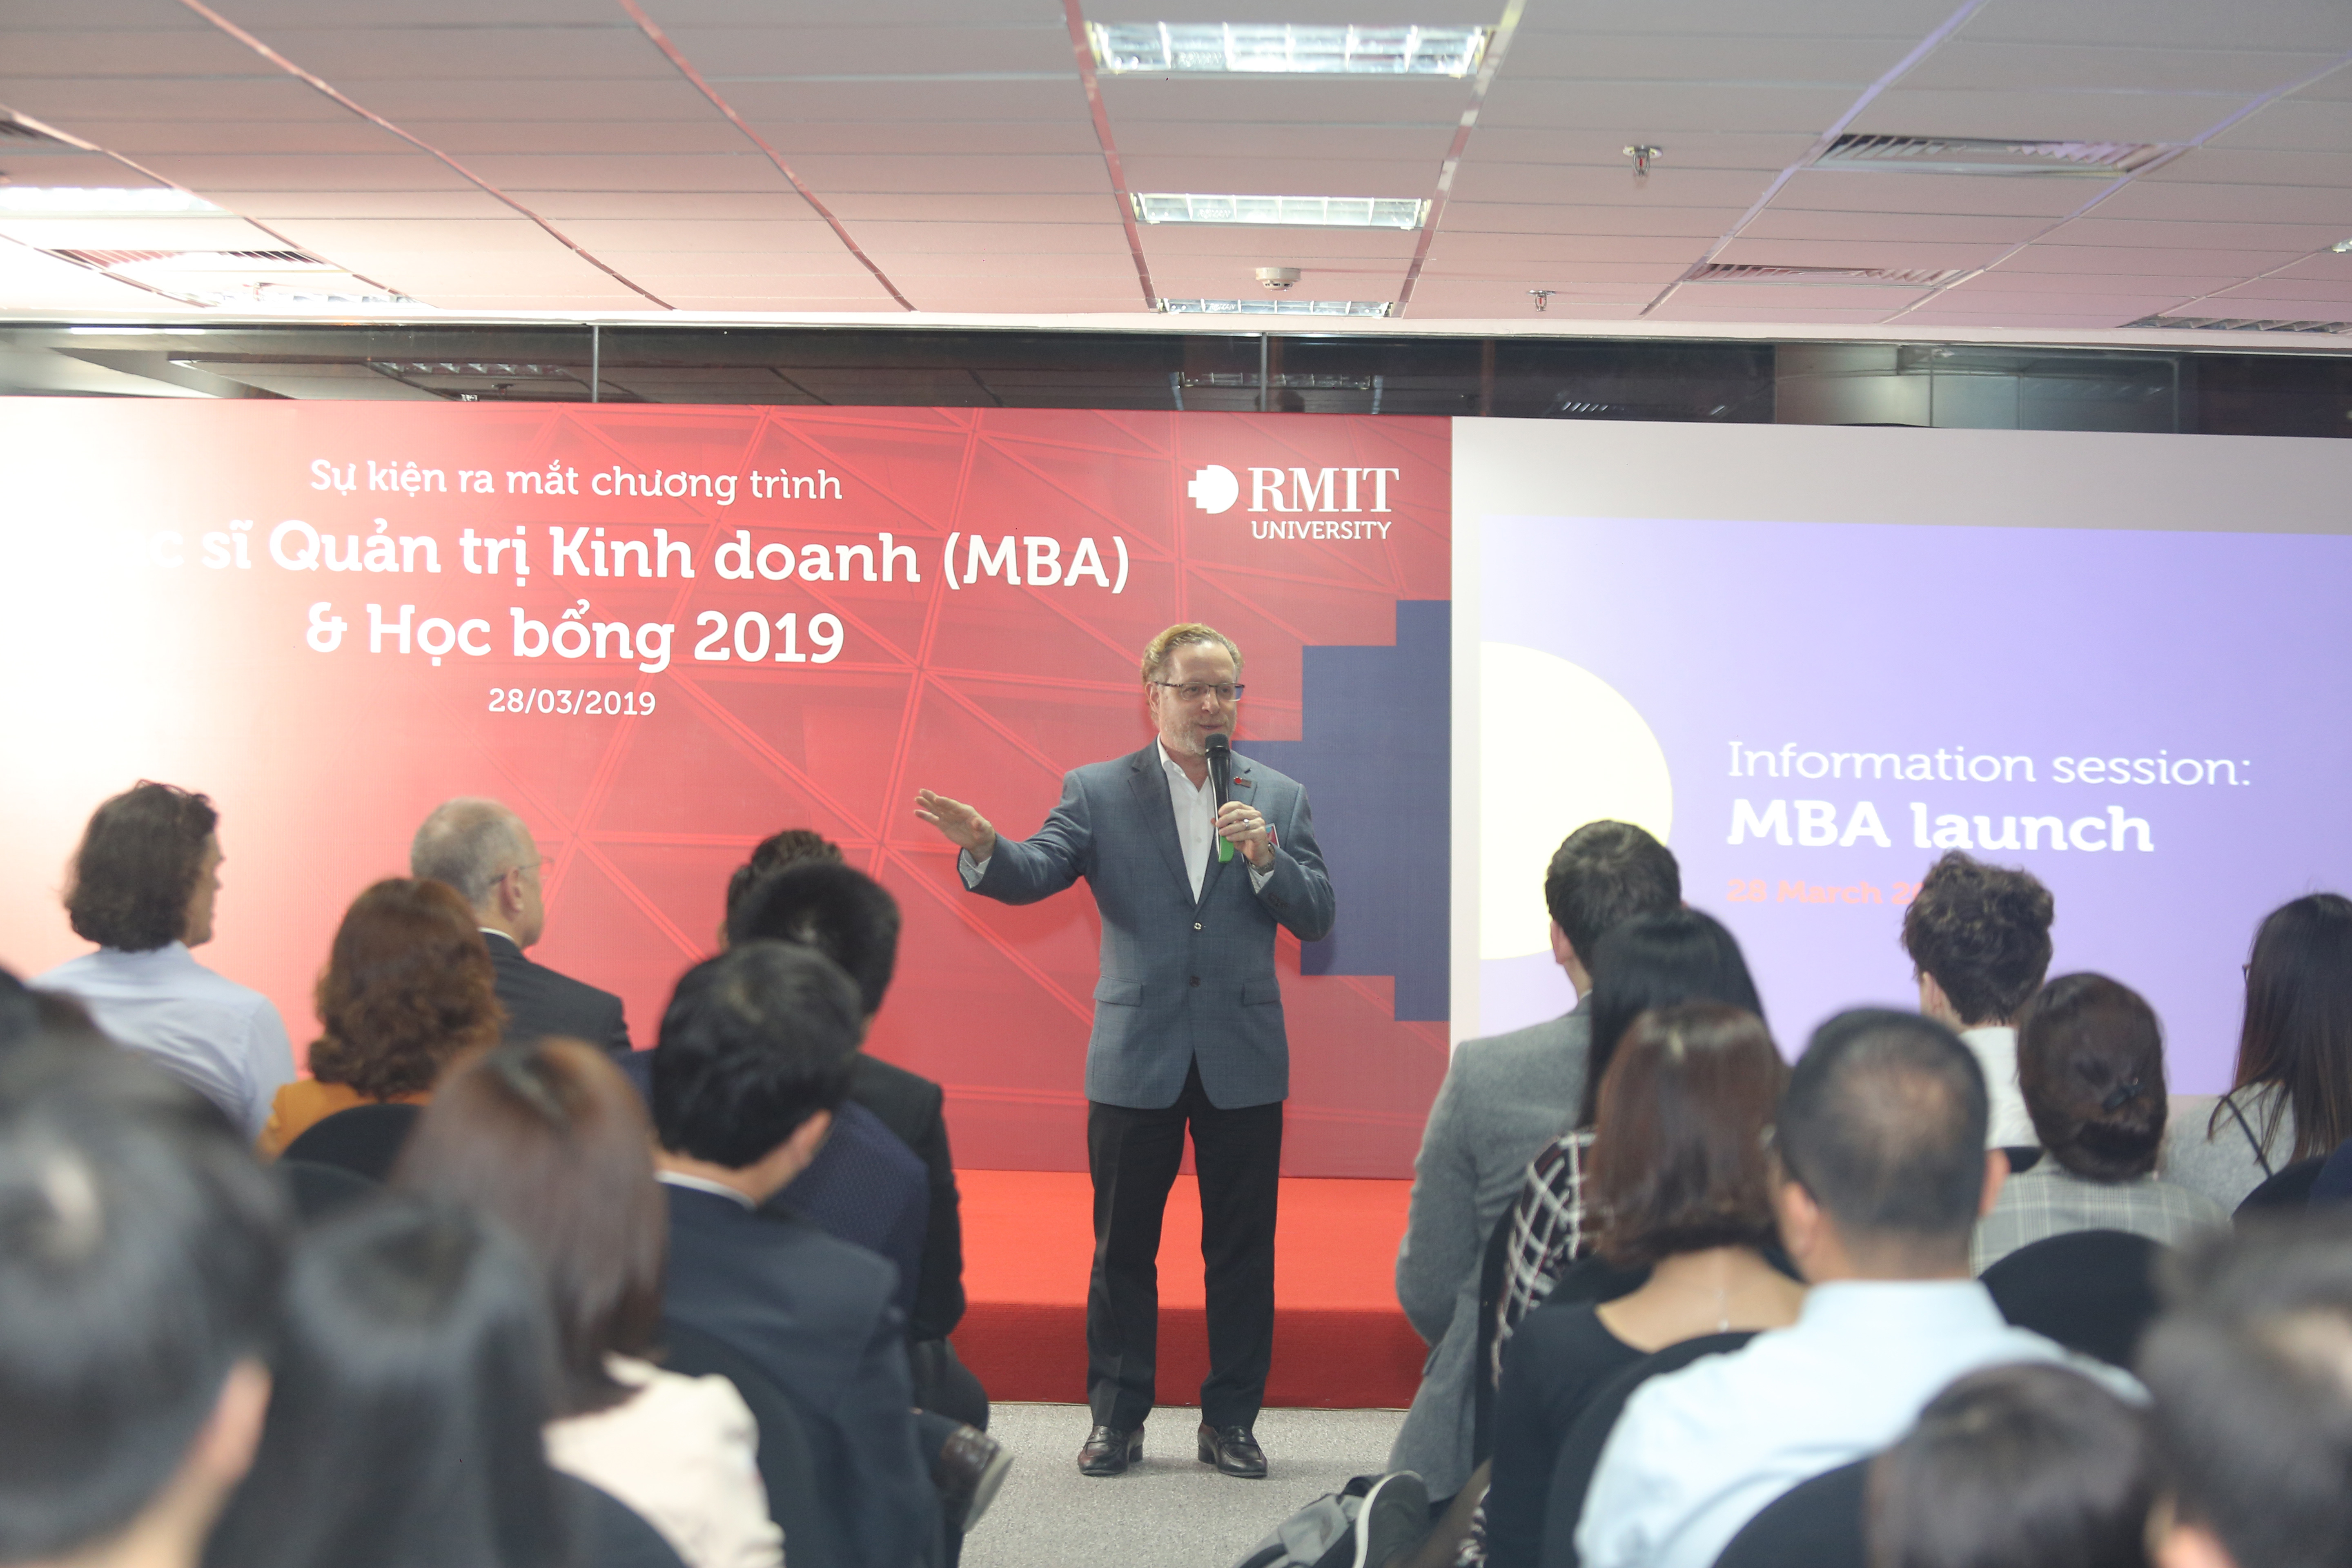 Phó giáo sư Victor Kane, Trưởng phòng Đào tạo sau đại học khu vực châu Á RMIT, phát biểu tại buổi ra mắt chương trình MBA ở Hà Nội.